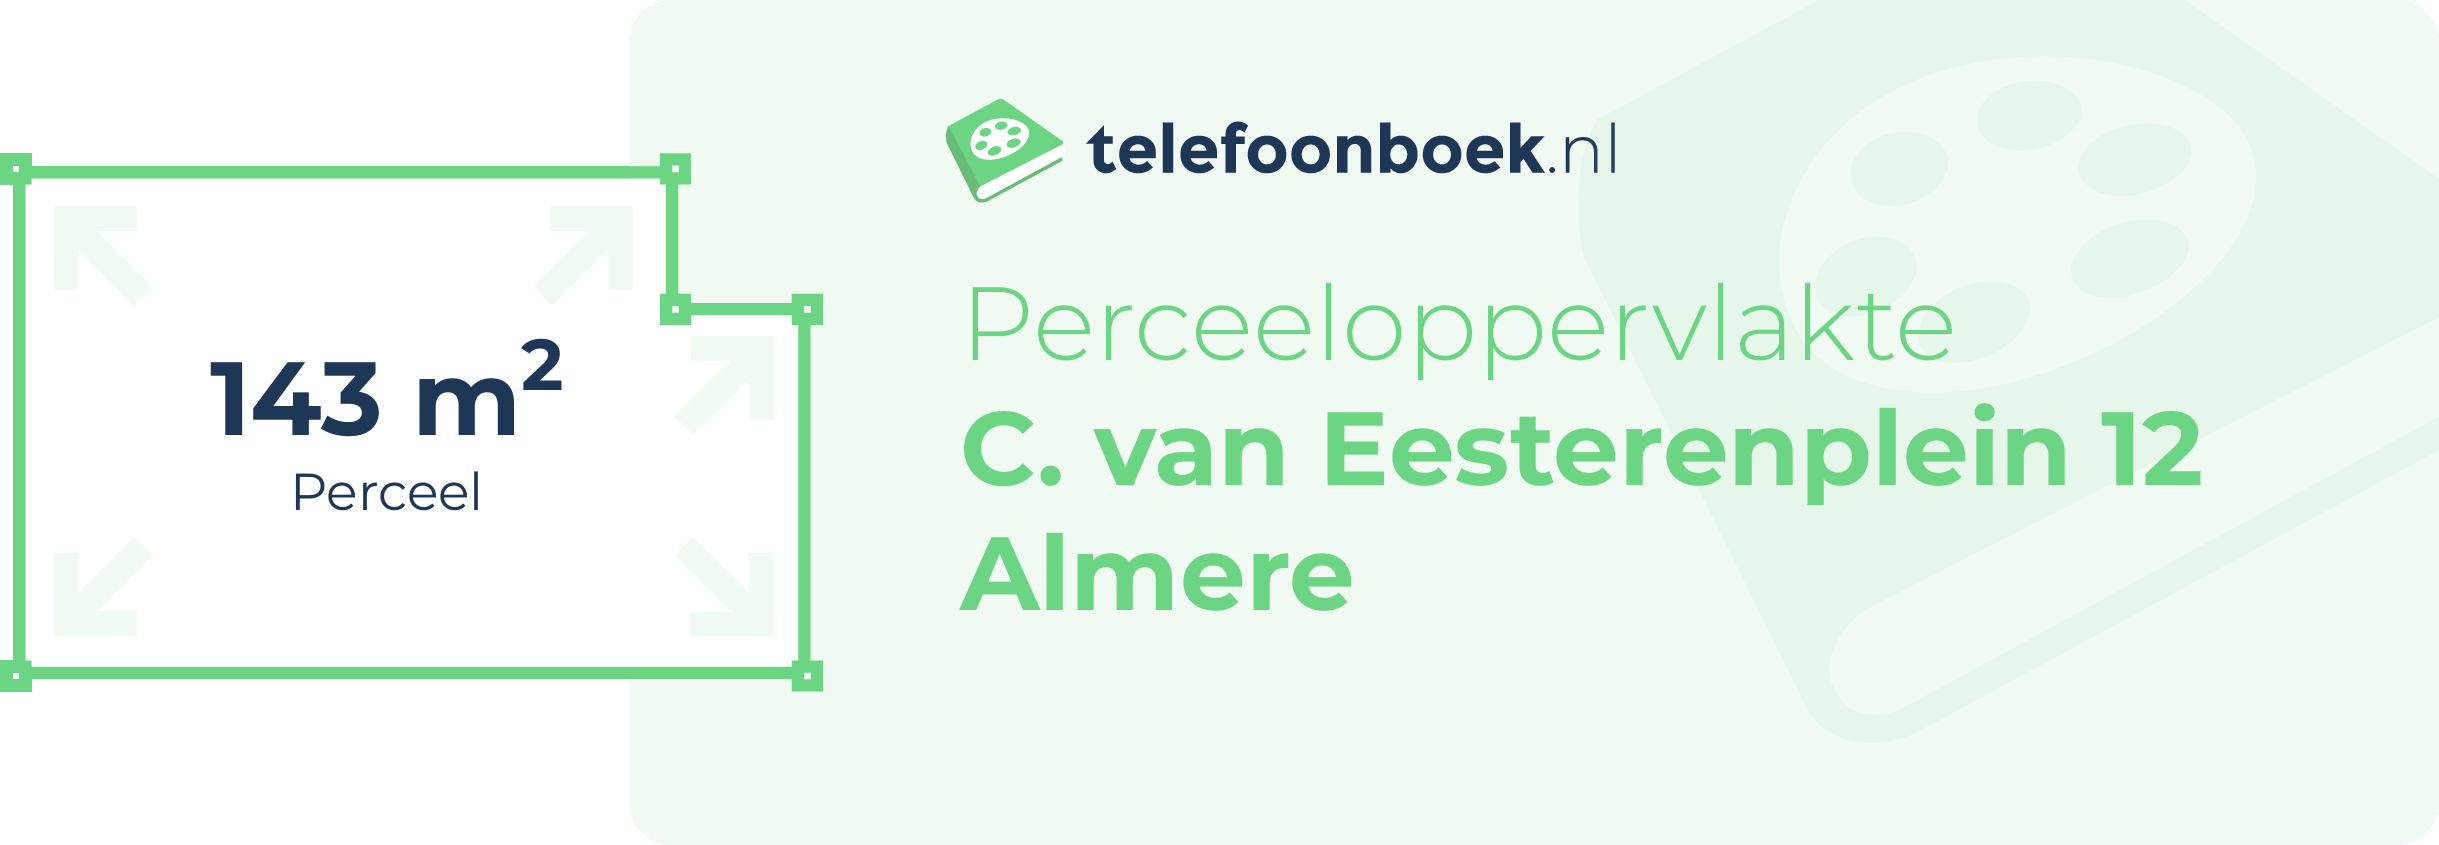 Perceeloppervlakte C. Van Eesterenplein 12 Almere